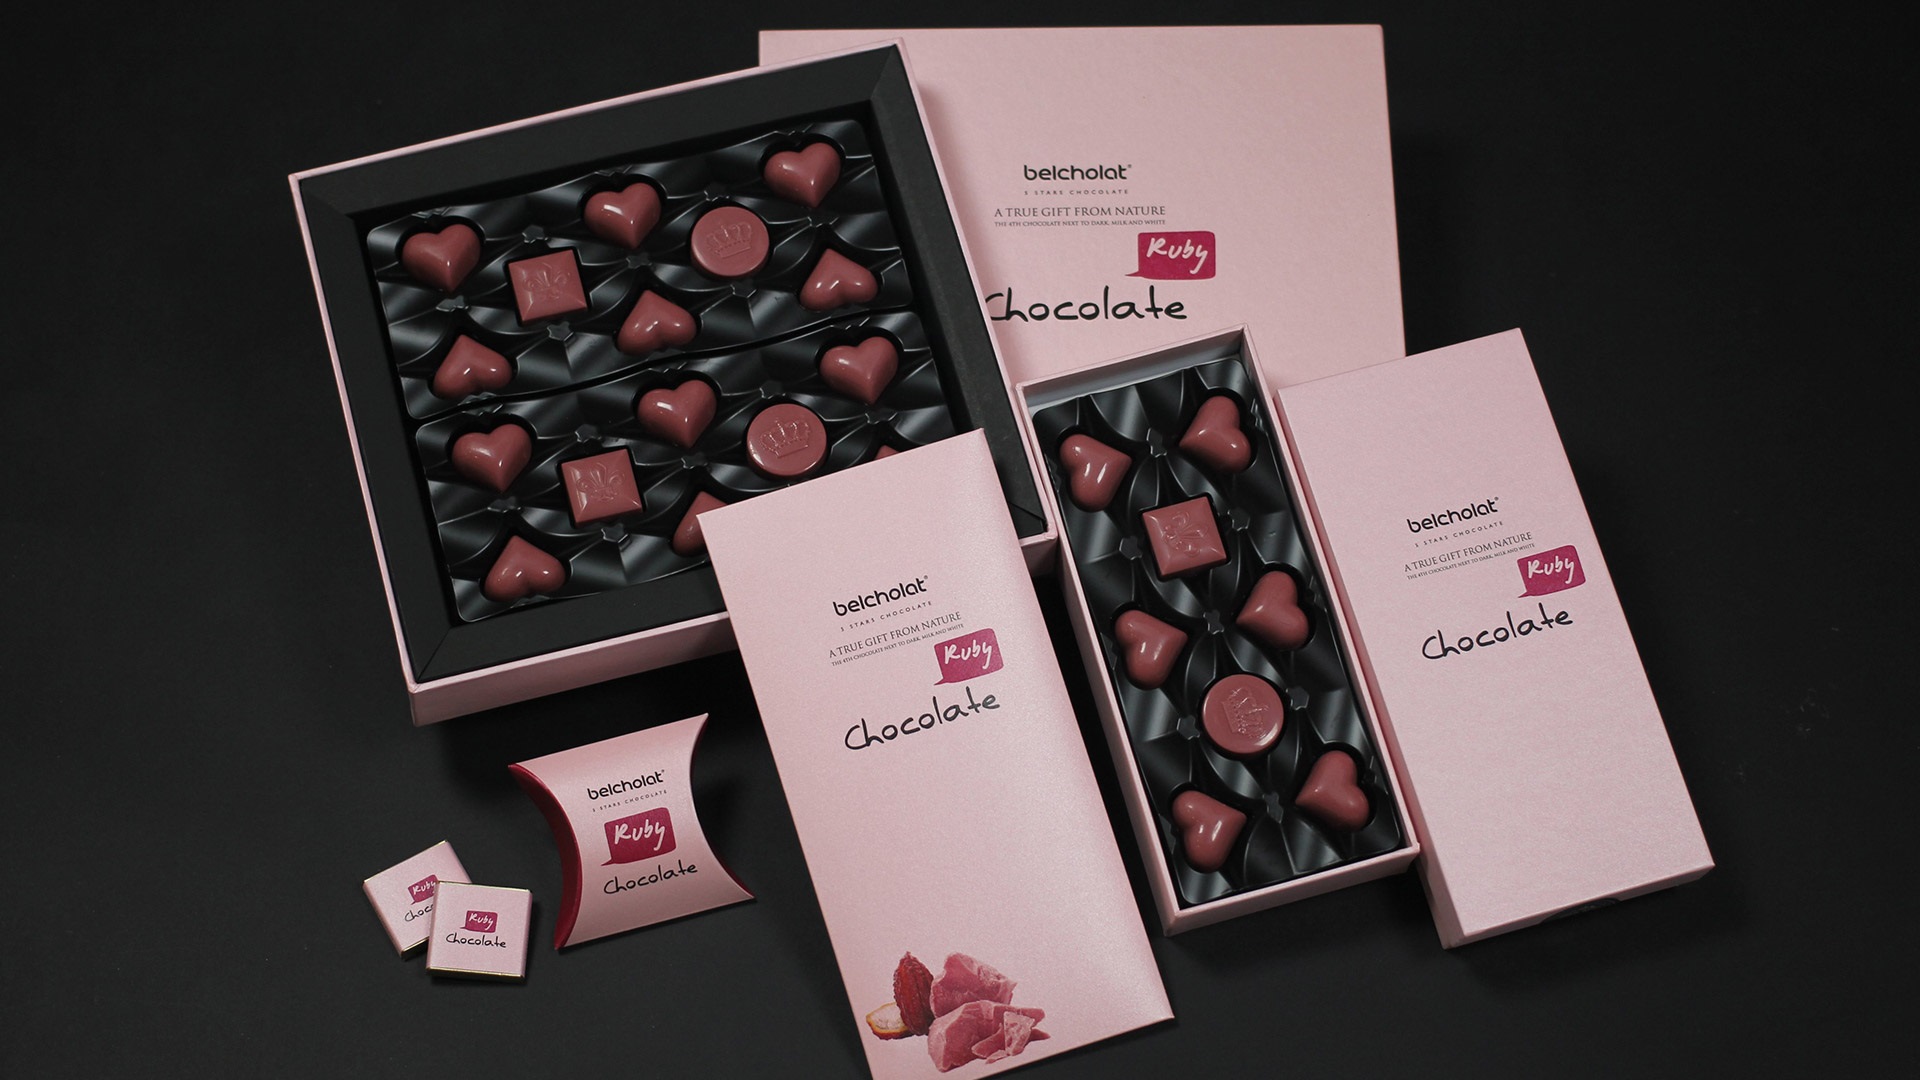 Ngọt ngào hương vị chocolate với ưu đãi 10% của Belcholat trên app VinID